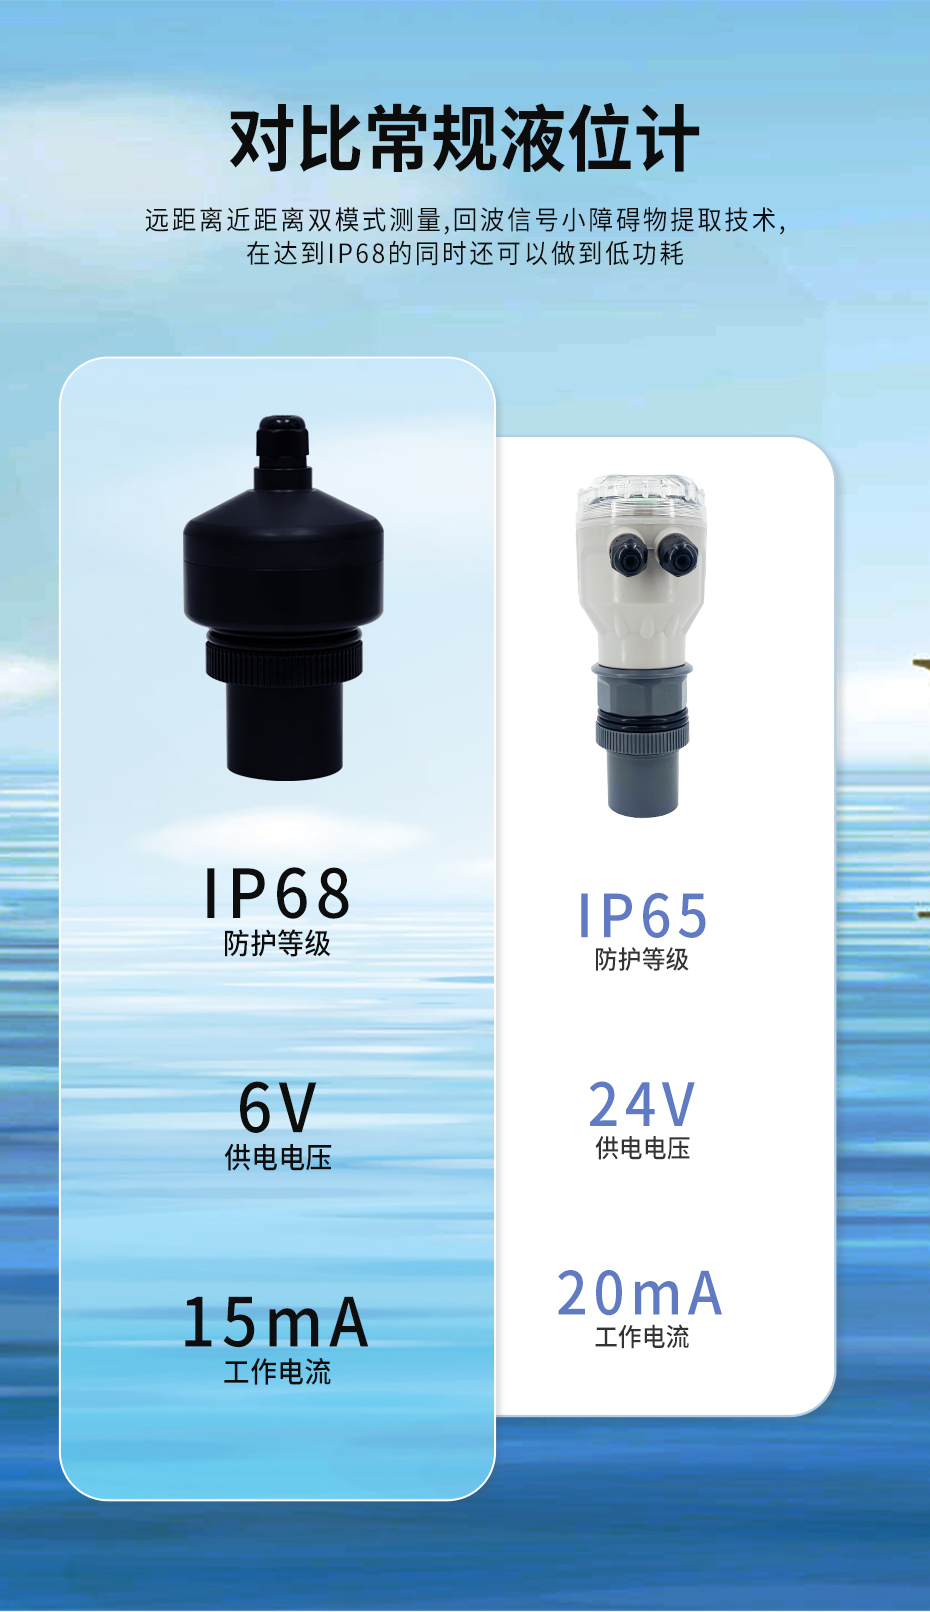 IP68水位计-官网_05